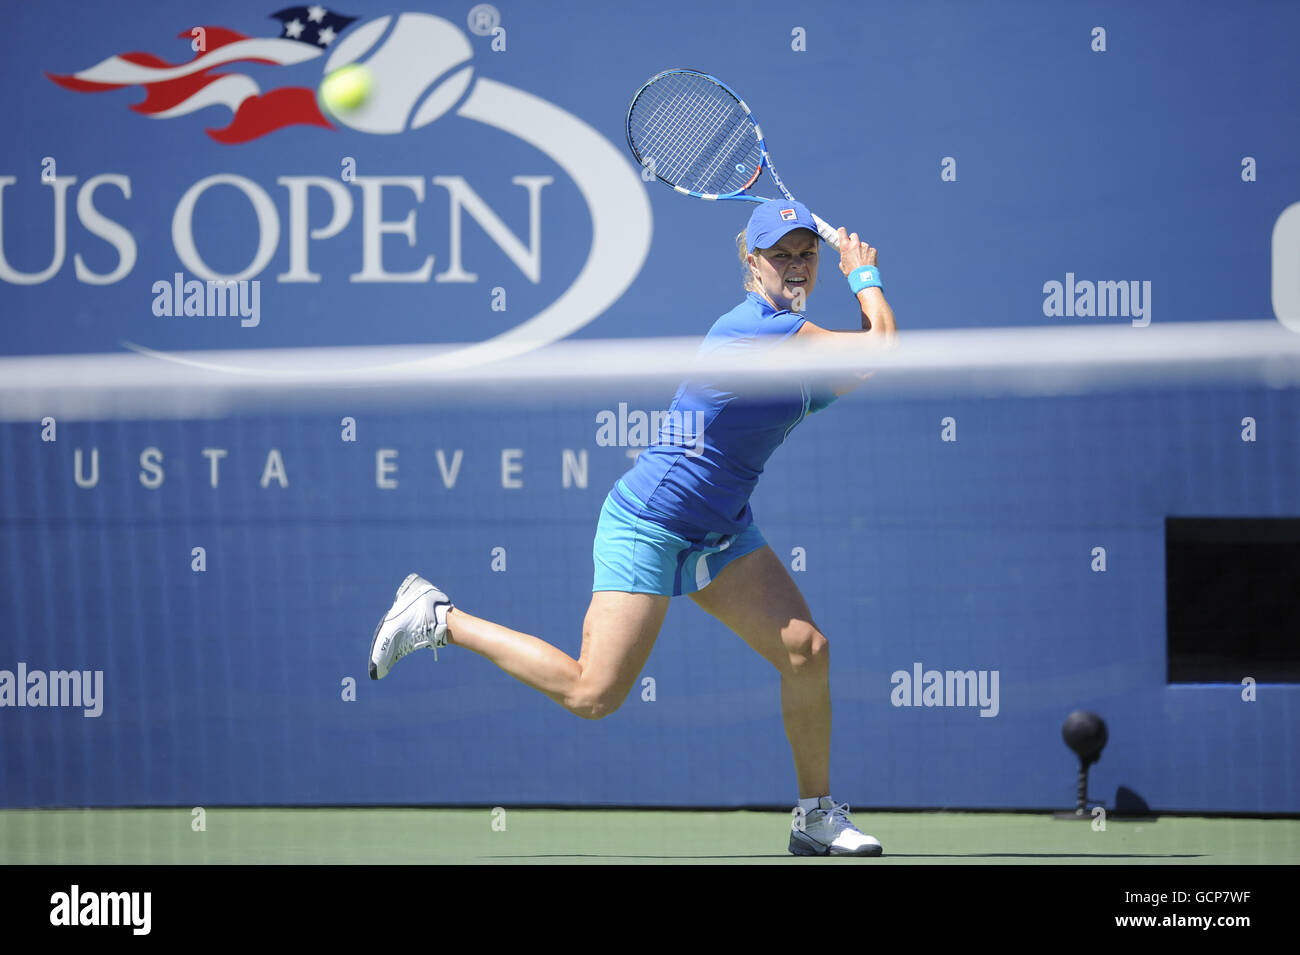 Kim Clijsters en Belgique dans son match contre Greta Arn en Hongrie pendant le premier jour de l'US Open, à Flushing Meadows, New York, États-Unis. Banque D'Images